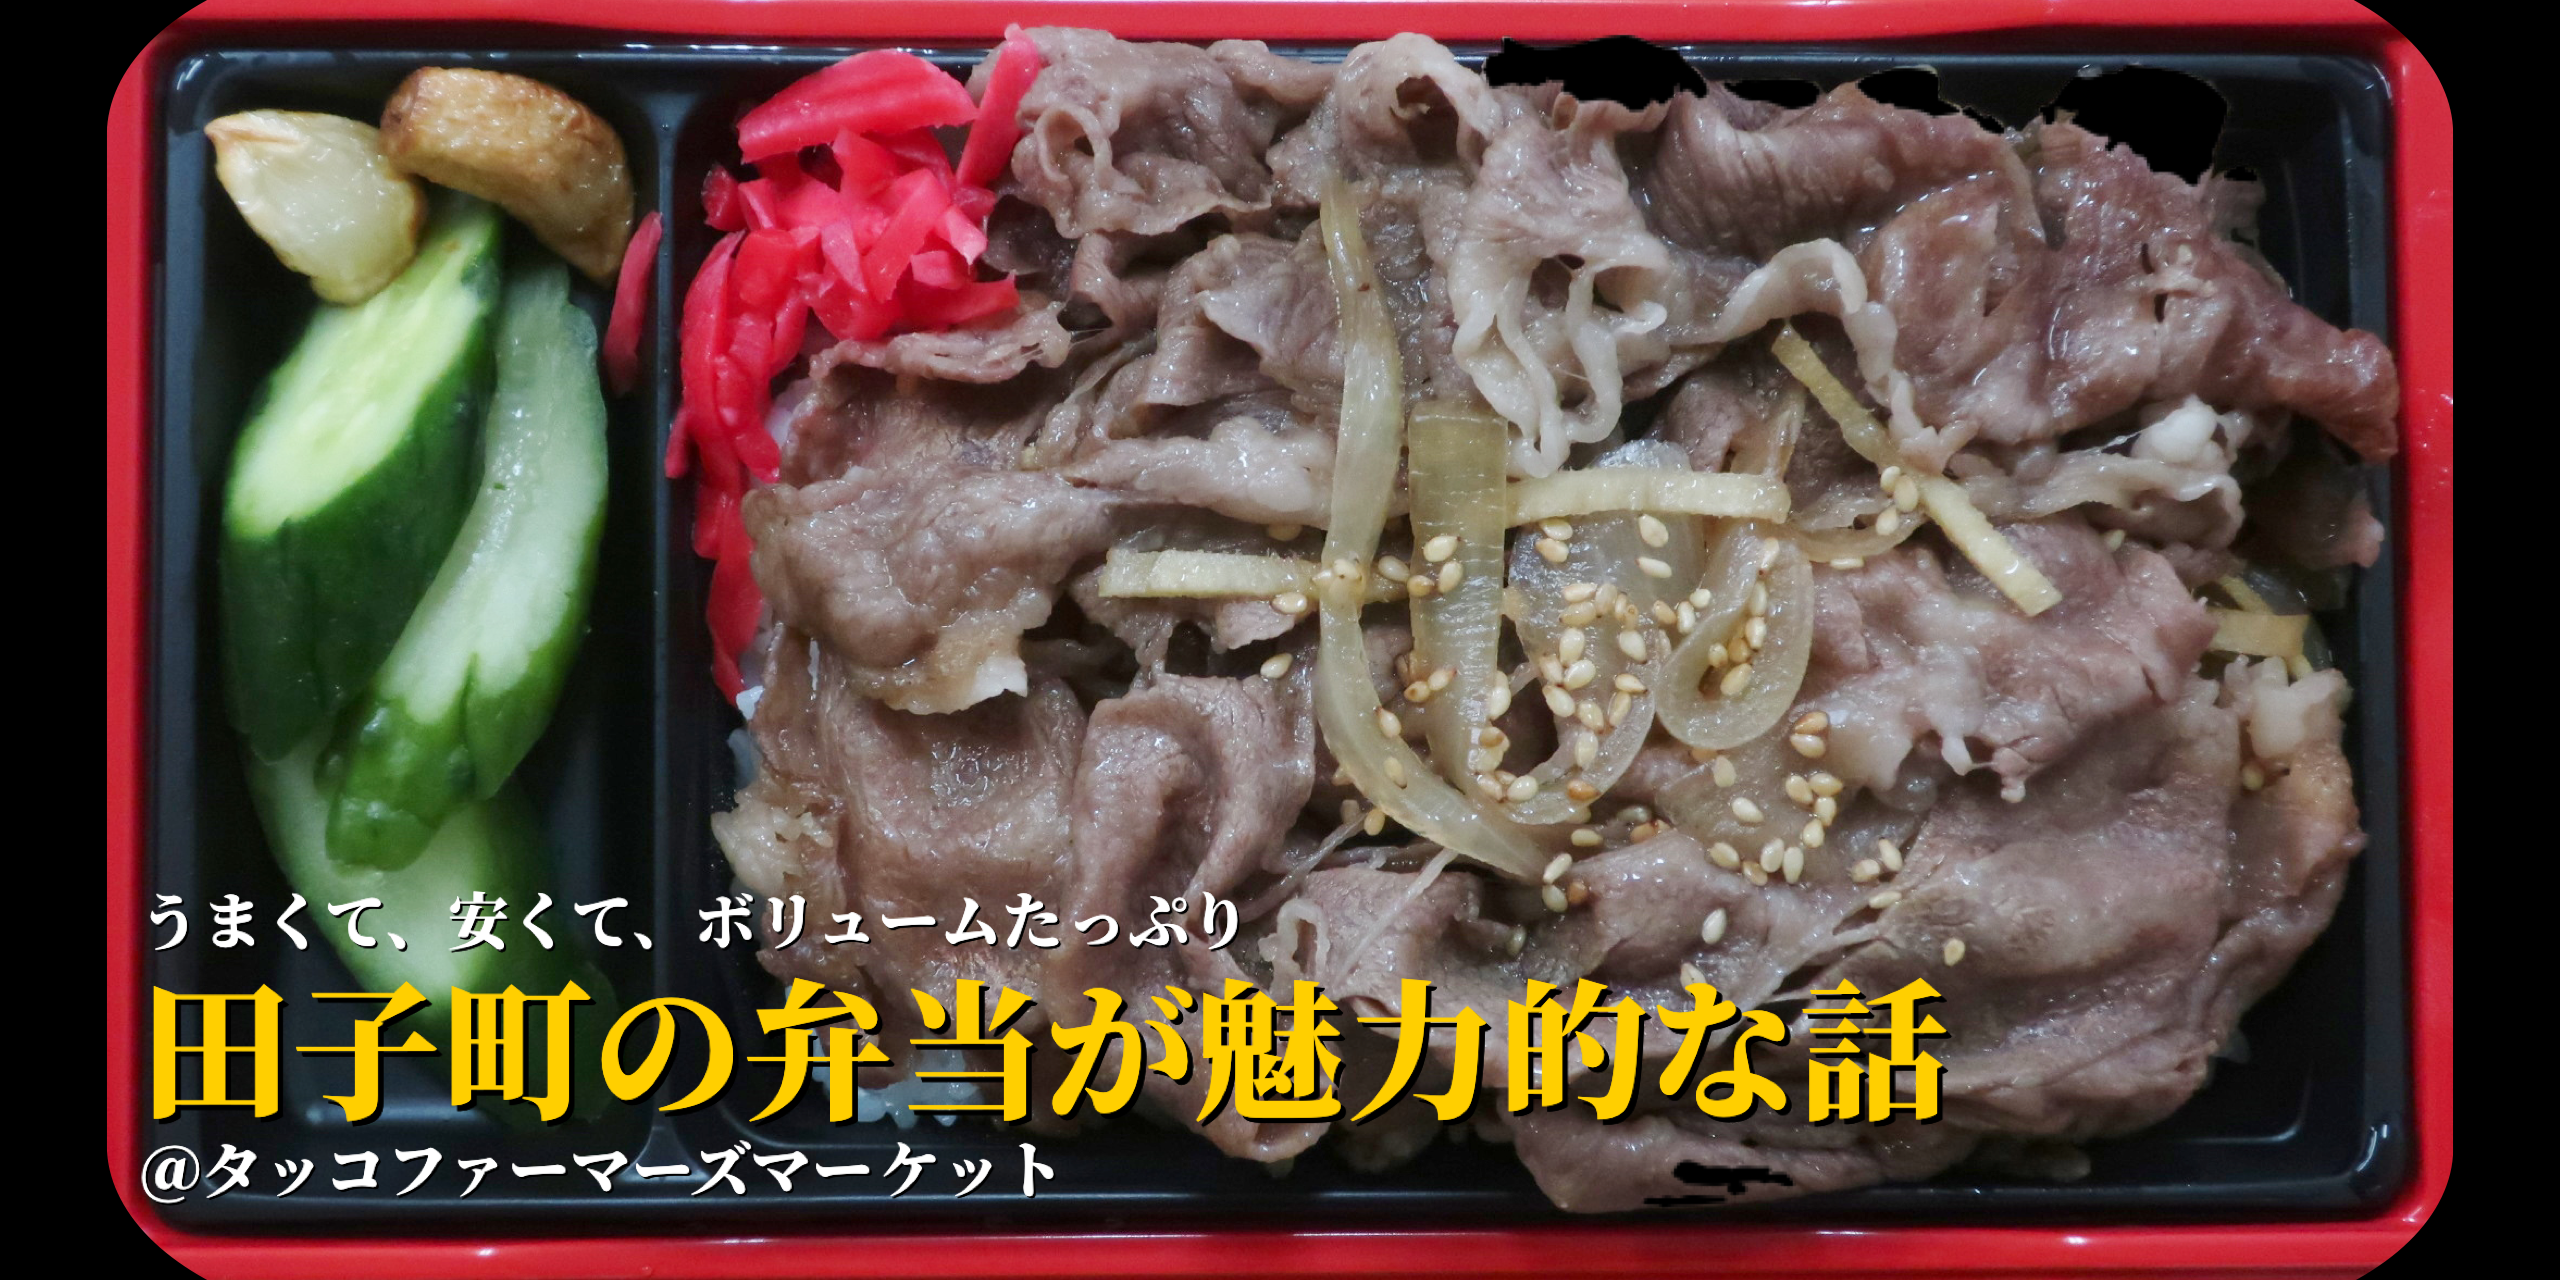 田子町の新たな賑わい創出「田子の弁当フェア」